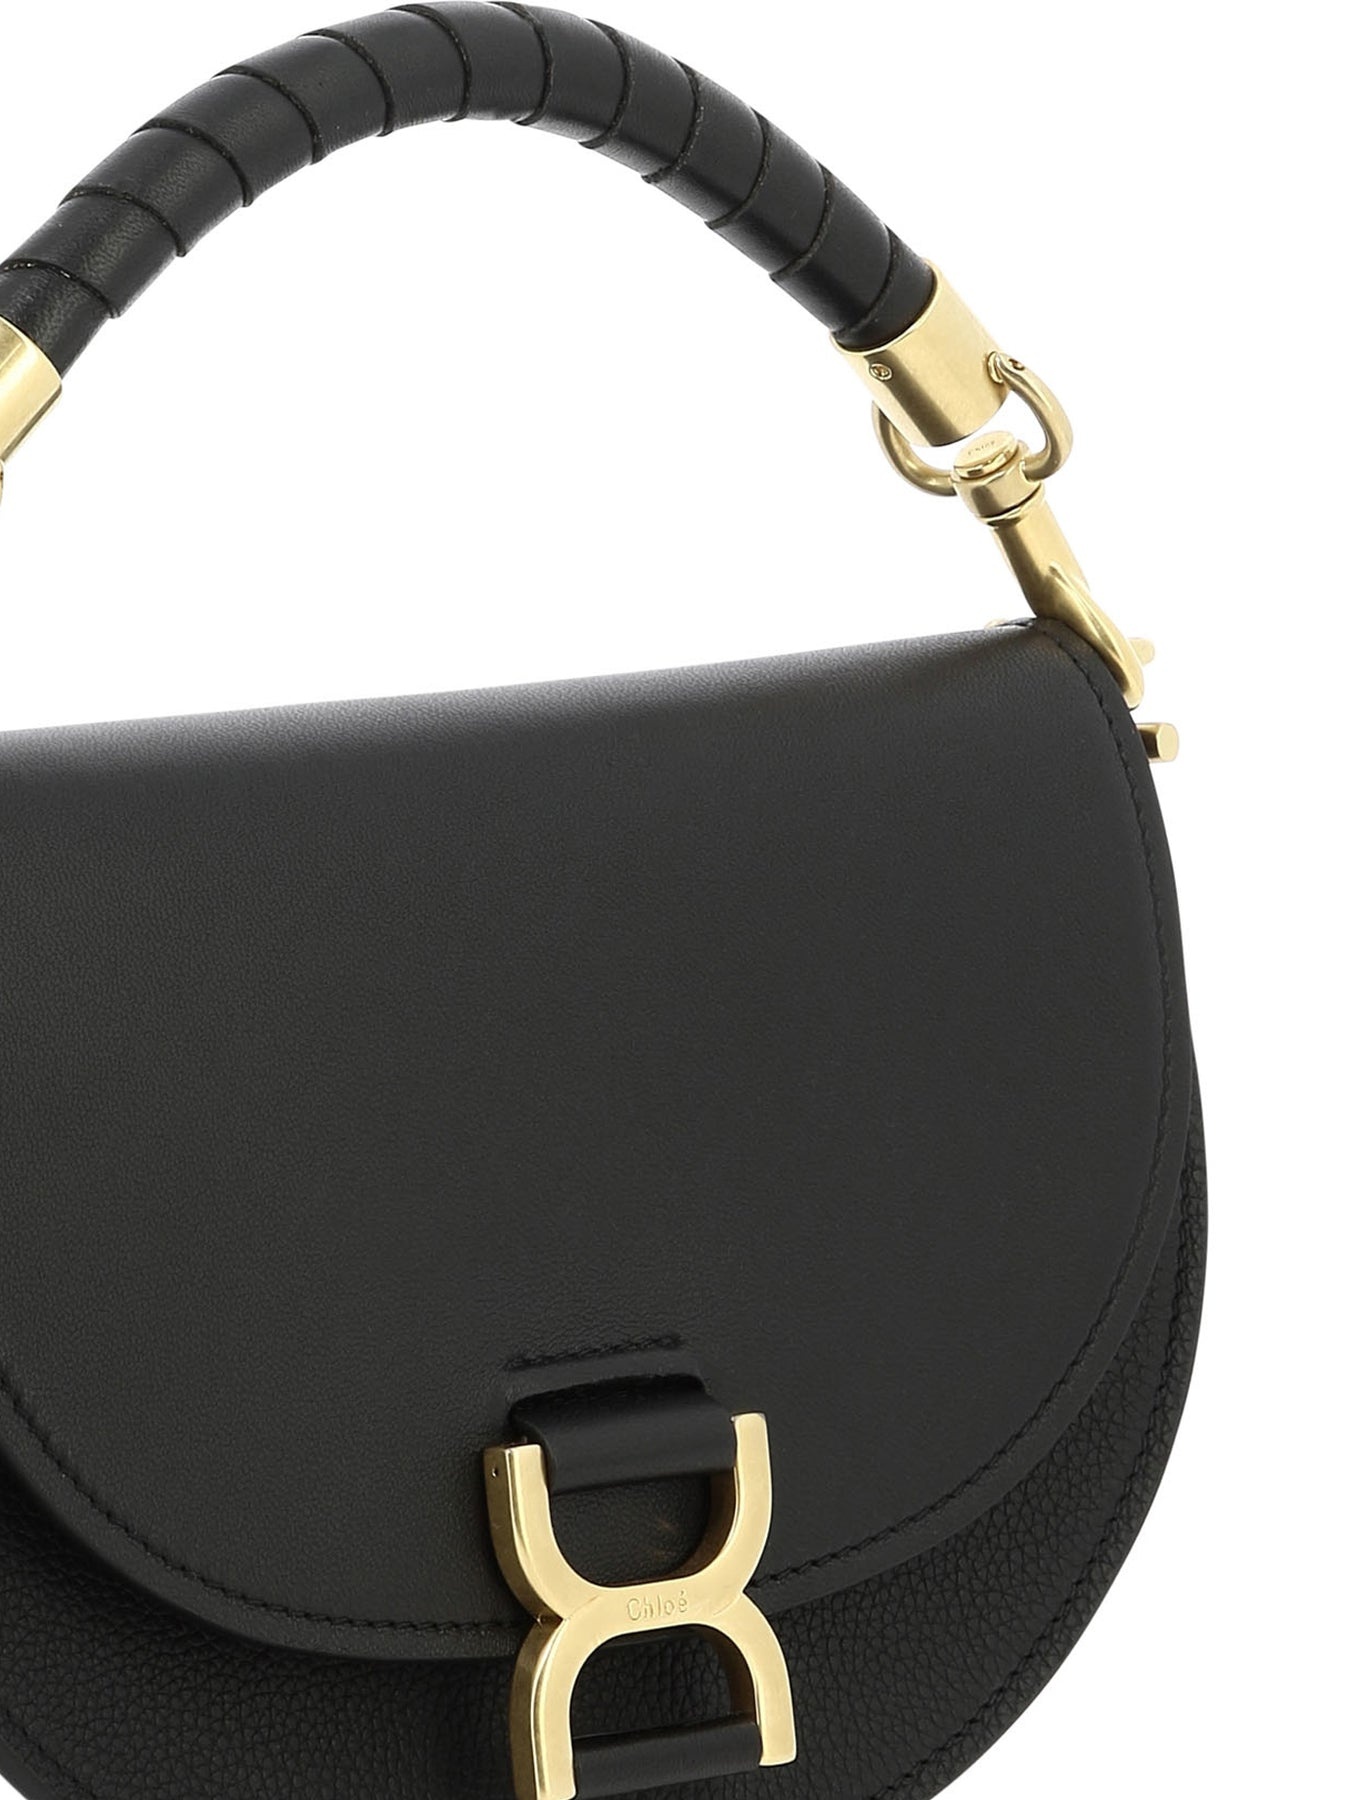 Marcie Handbags Black - 4